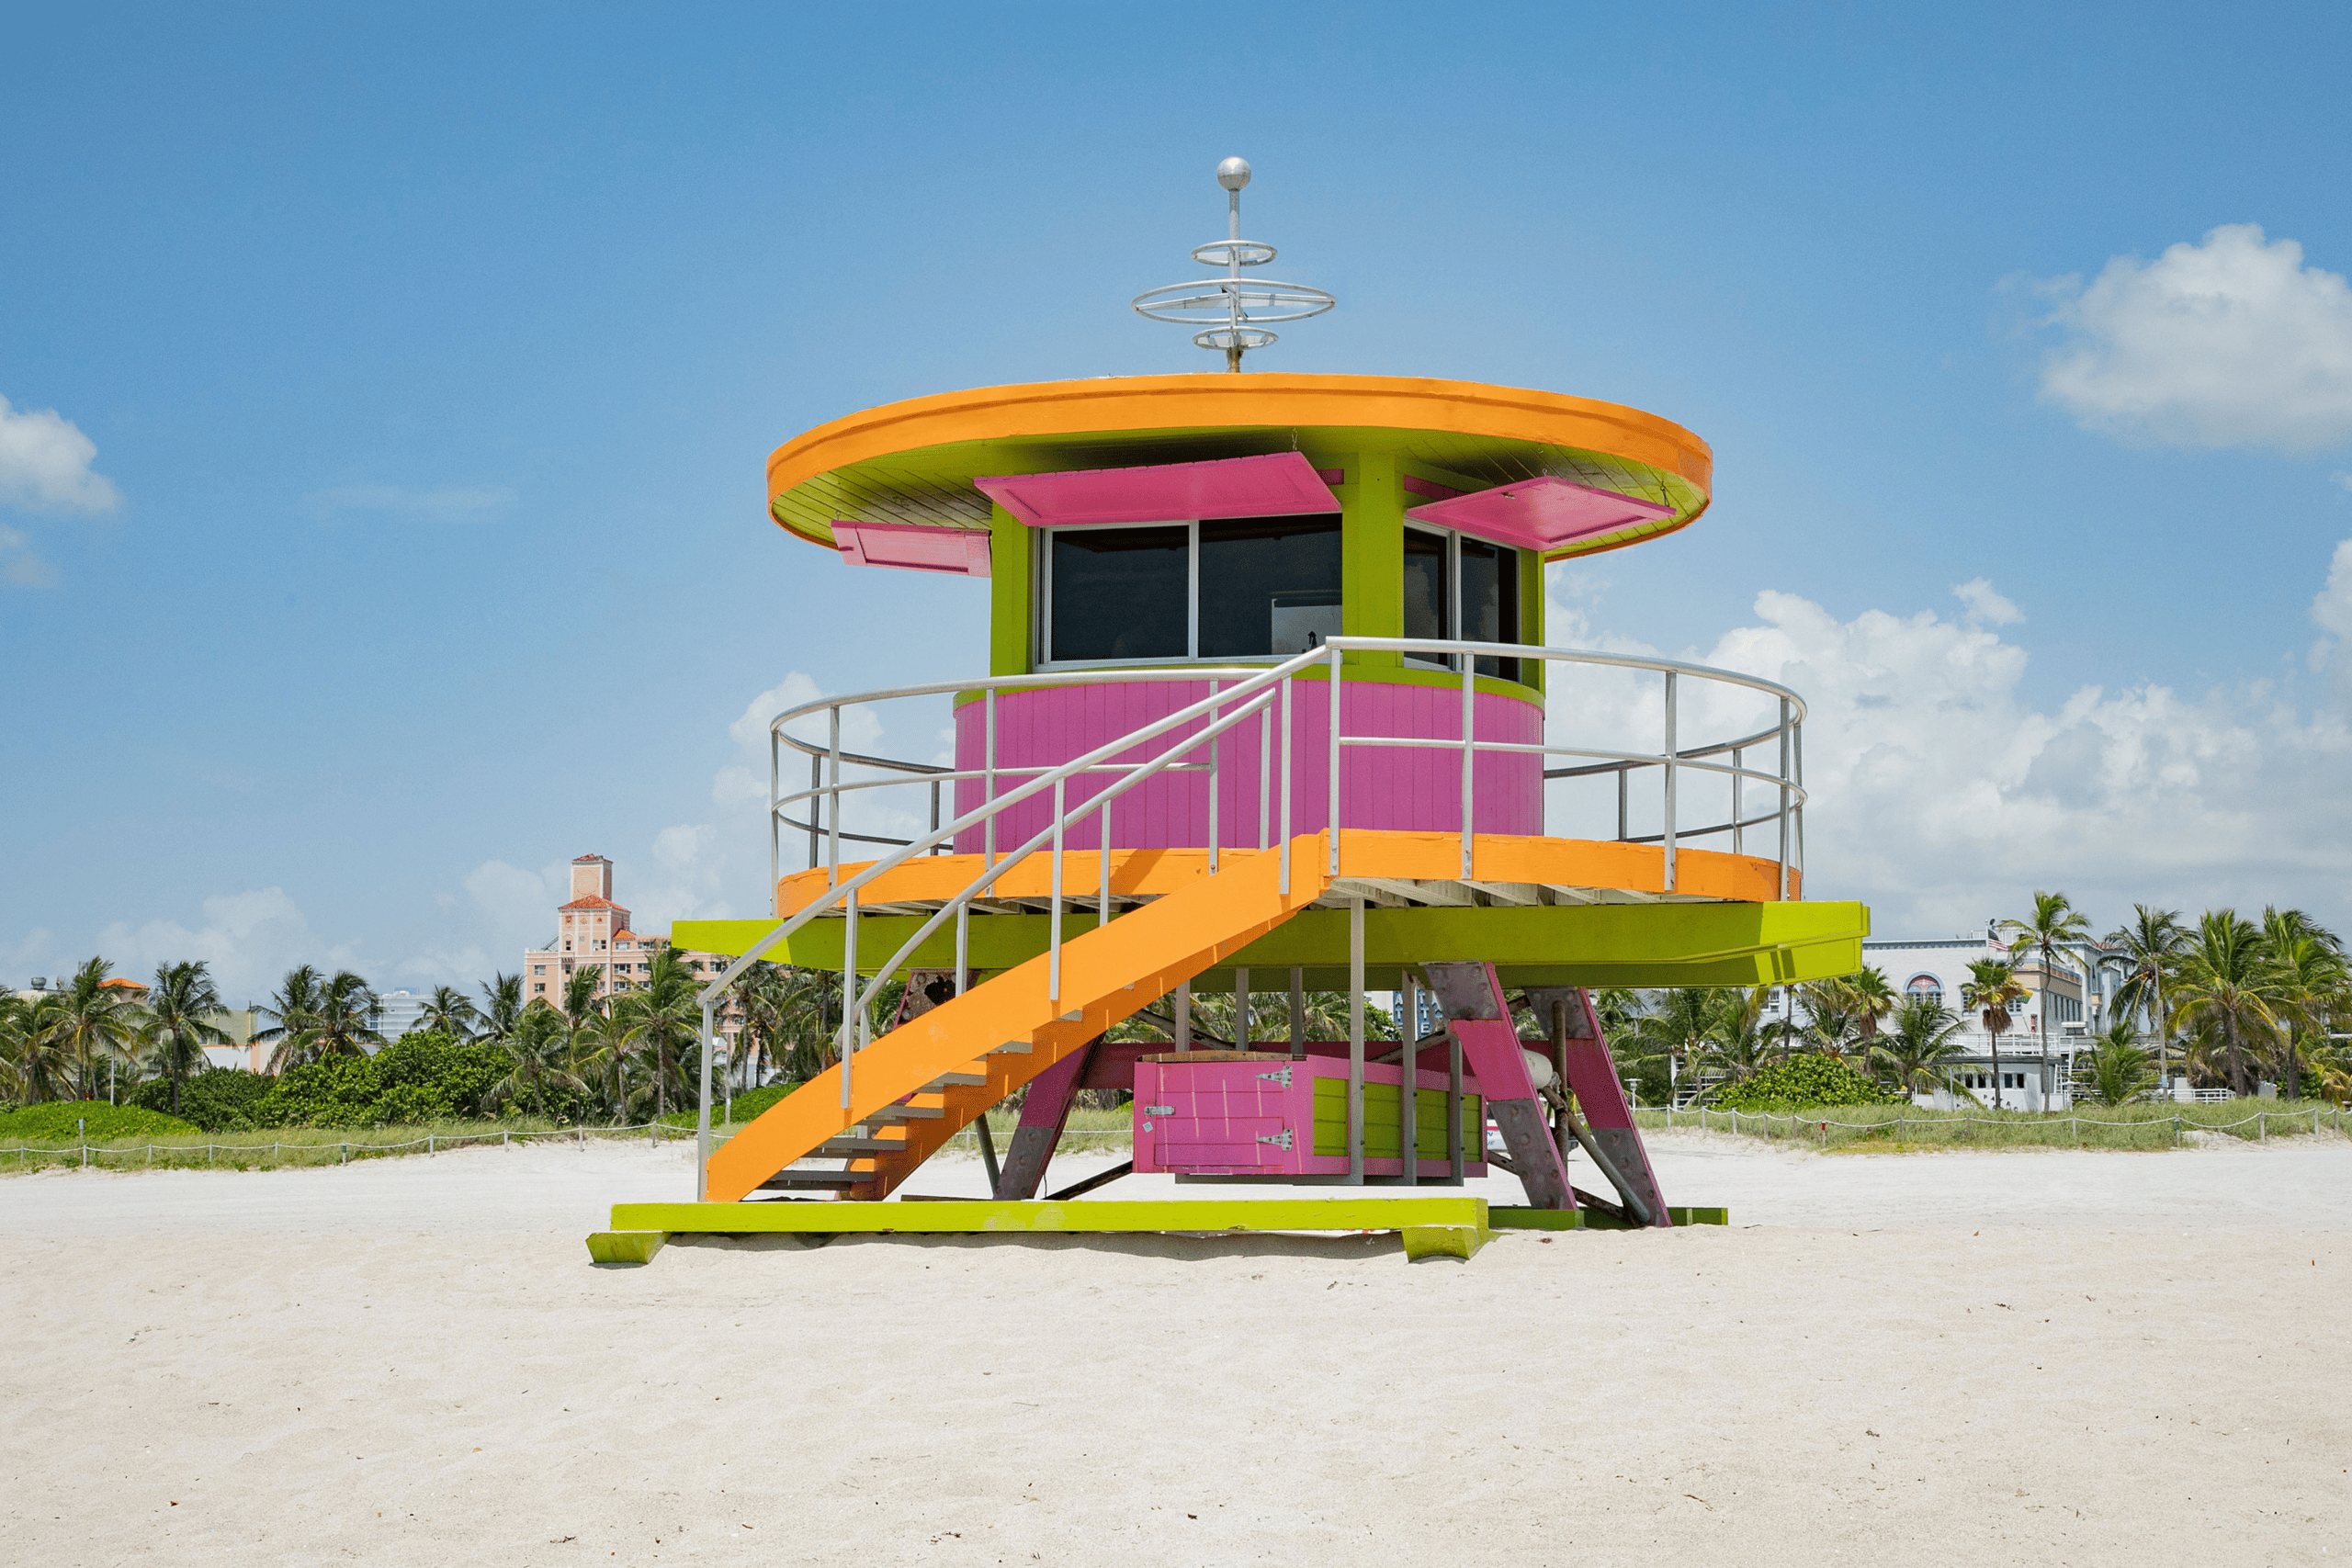 Ein hölzernes, rundes Wachhäuschen am Strand in Pink, Orange und Gelb. Miami Beach, Lifeguard Tower, William Lane, Foto: Archiv Architekten